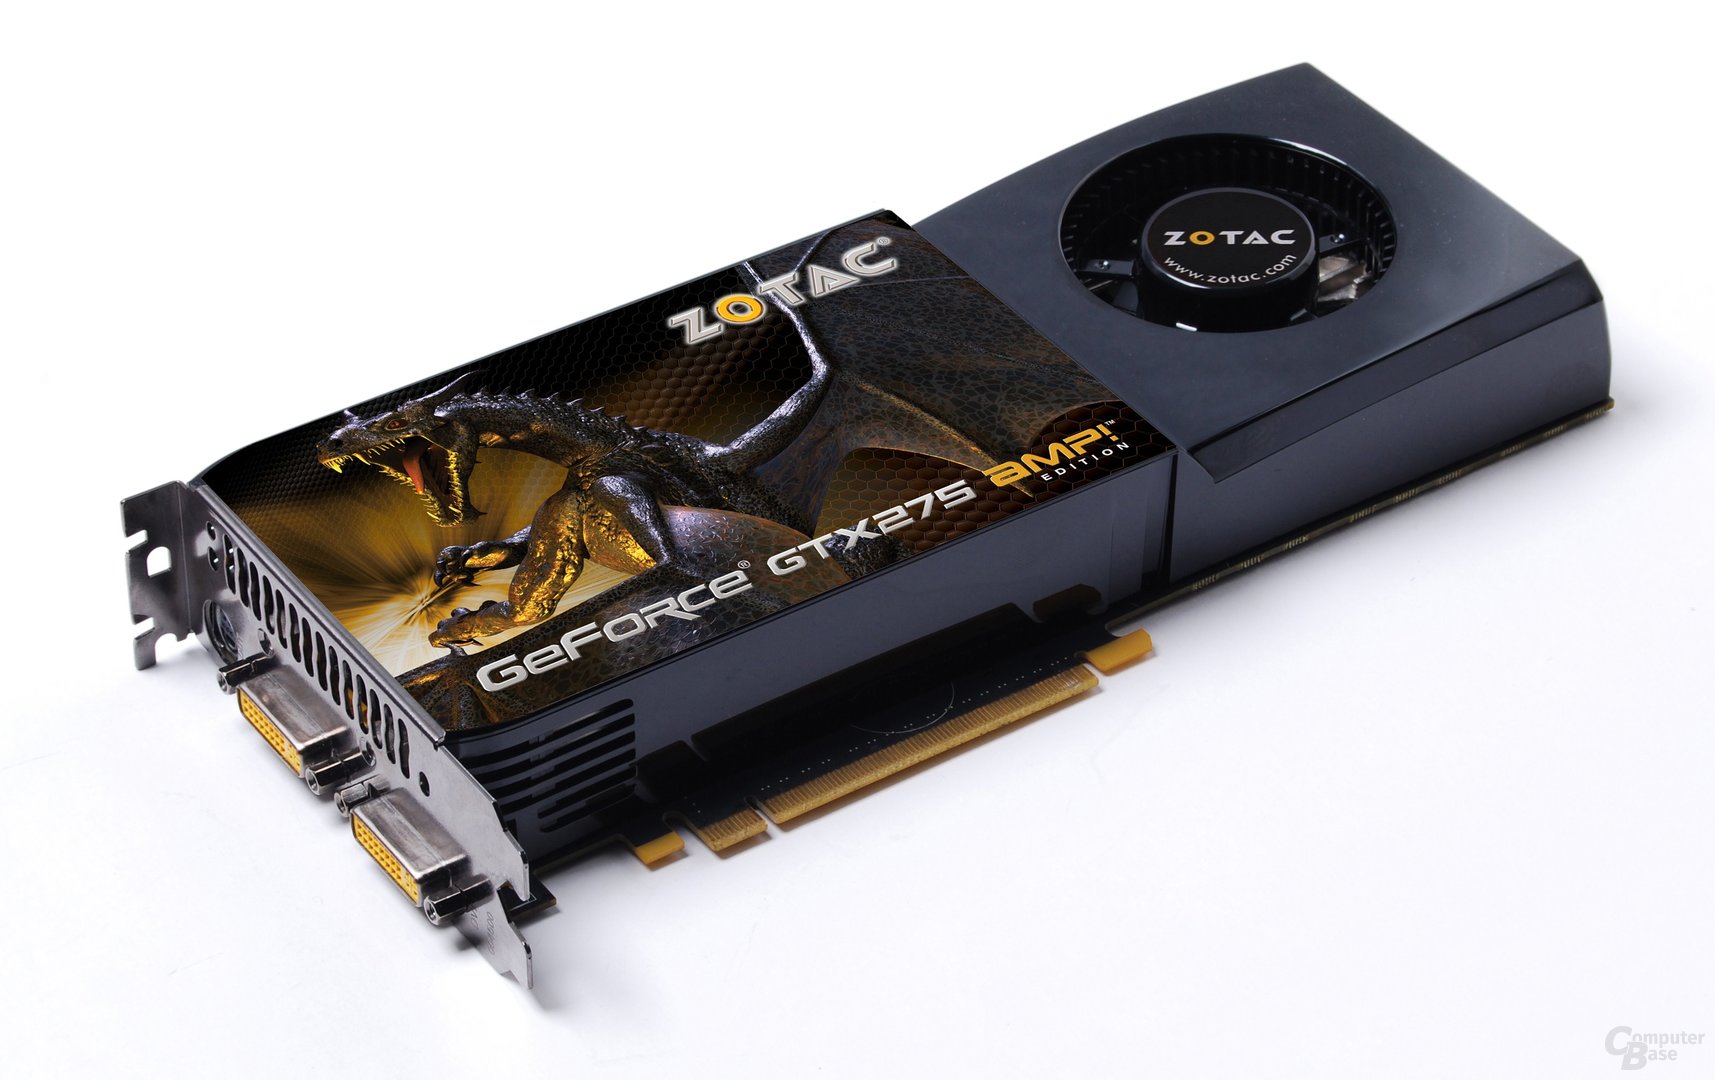 Zotac GeForce GTX 275 AMP!-Edition